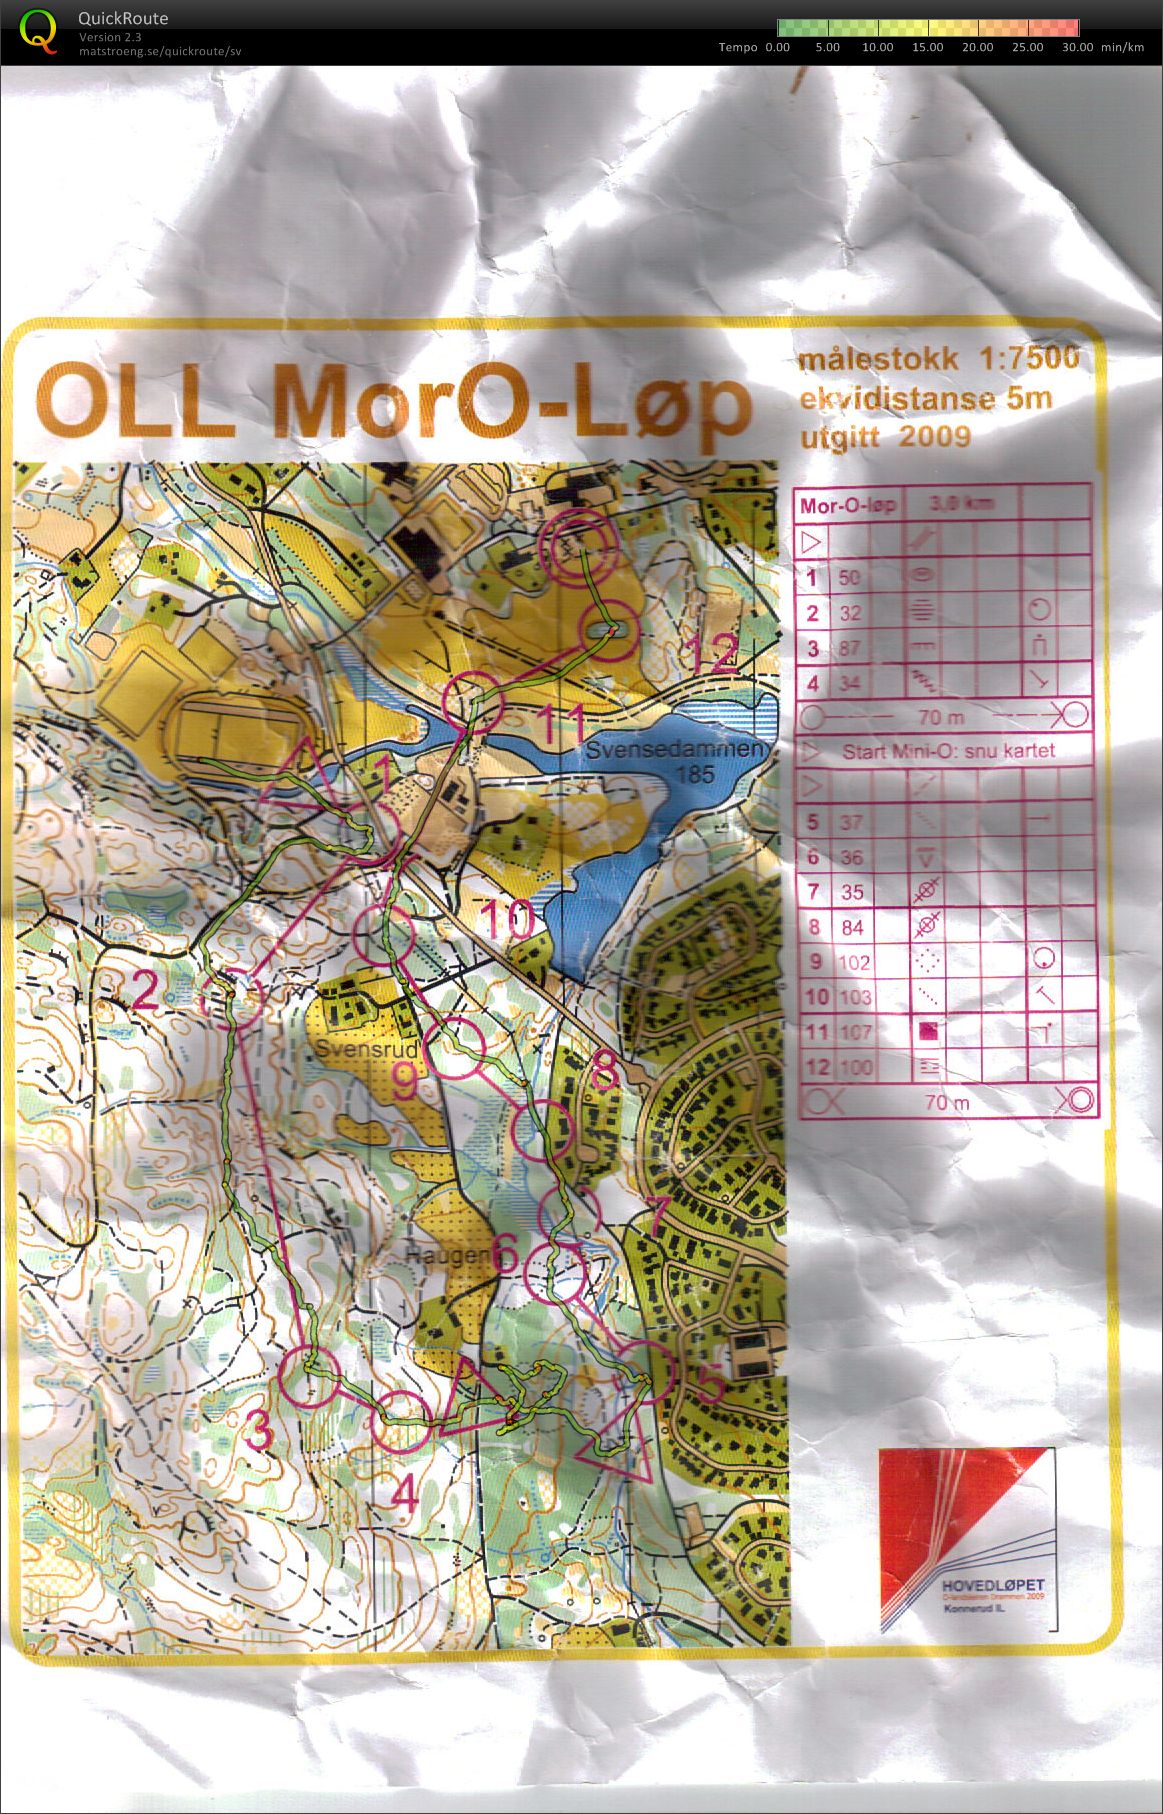 OLL MorO-løp  (11-08-2009)